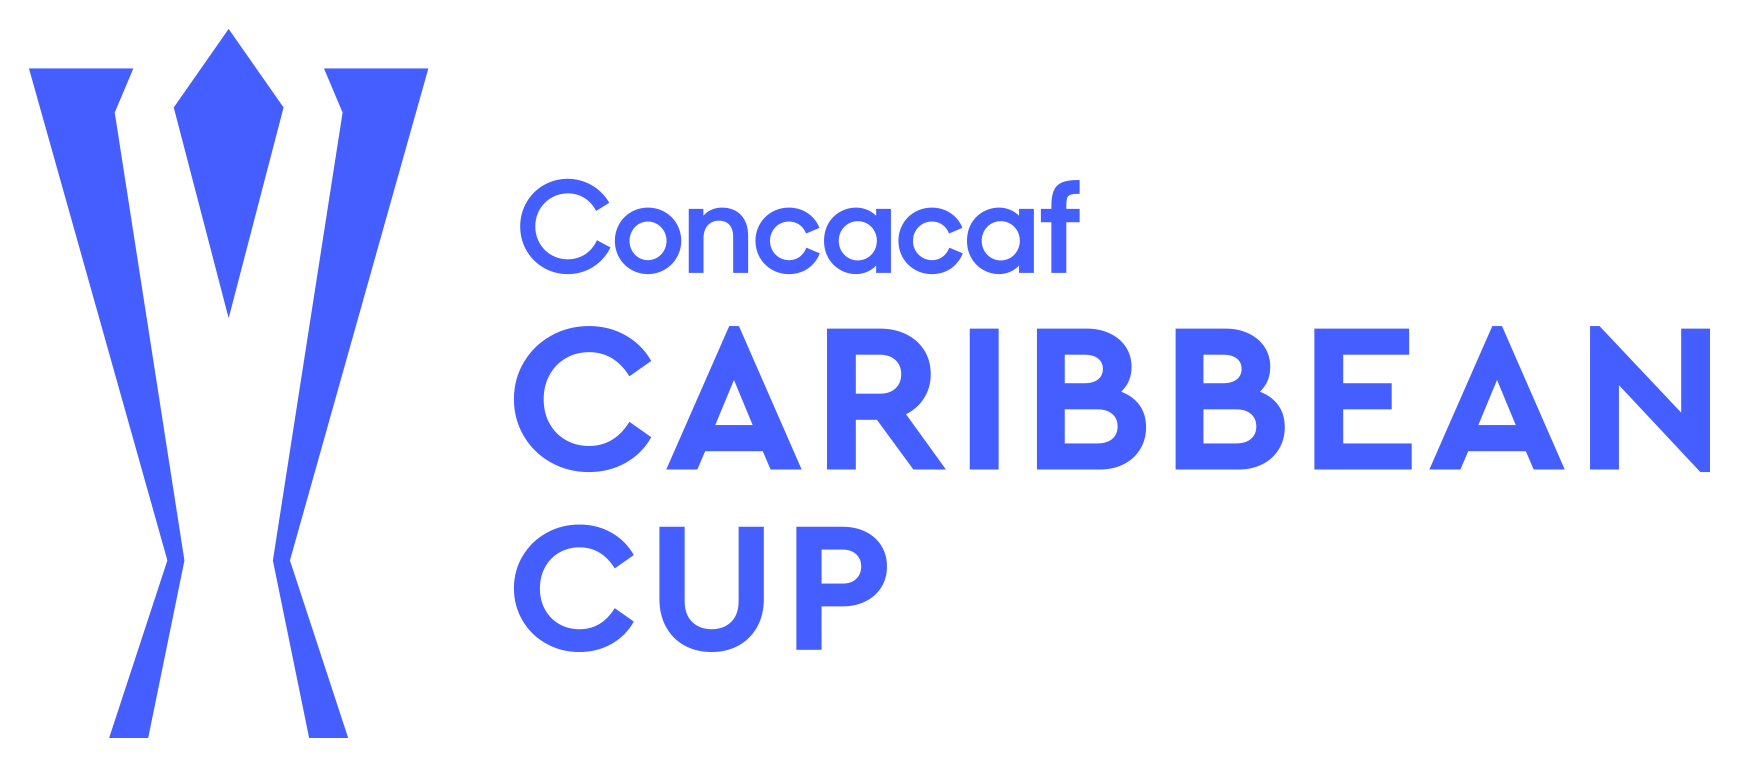 Copa Caribeña Concacaf